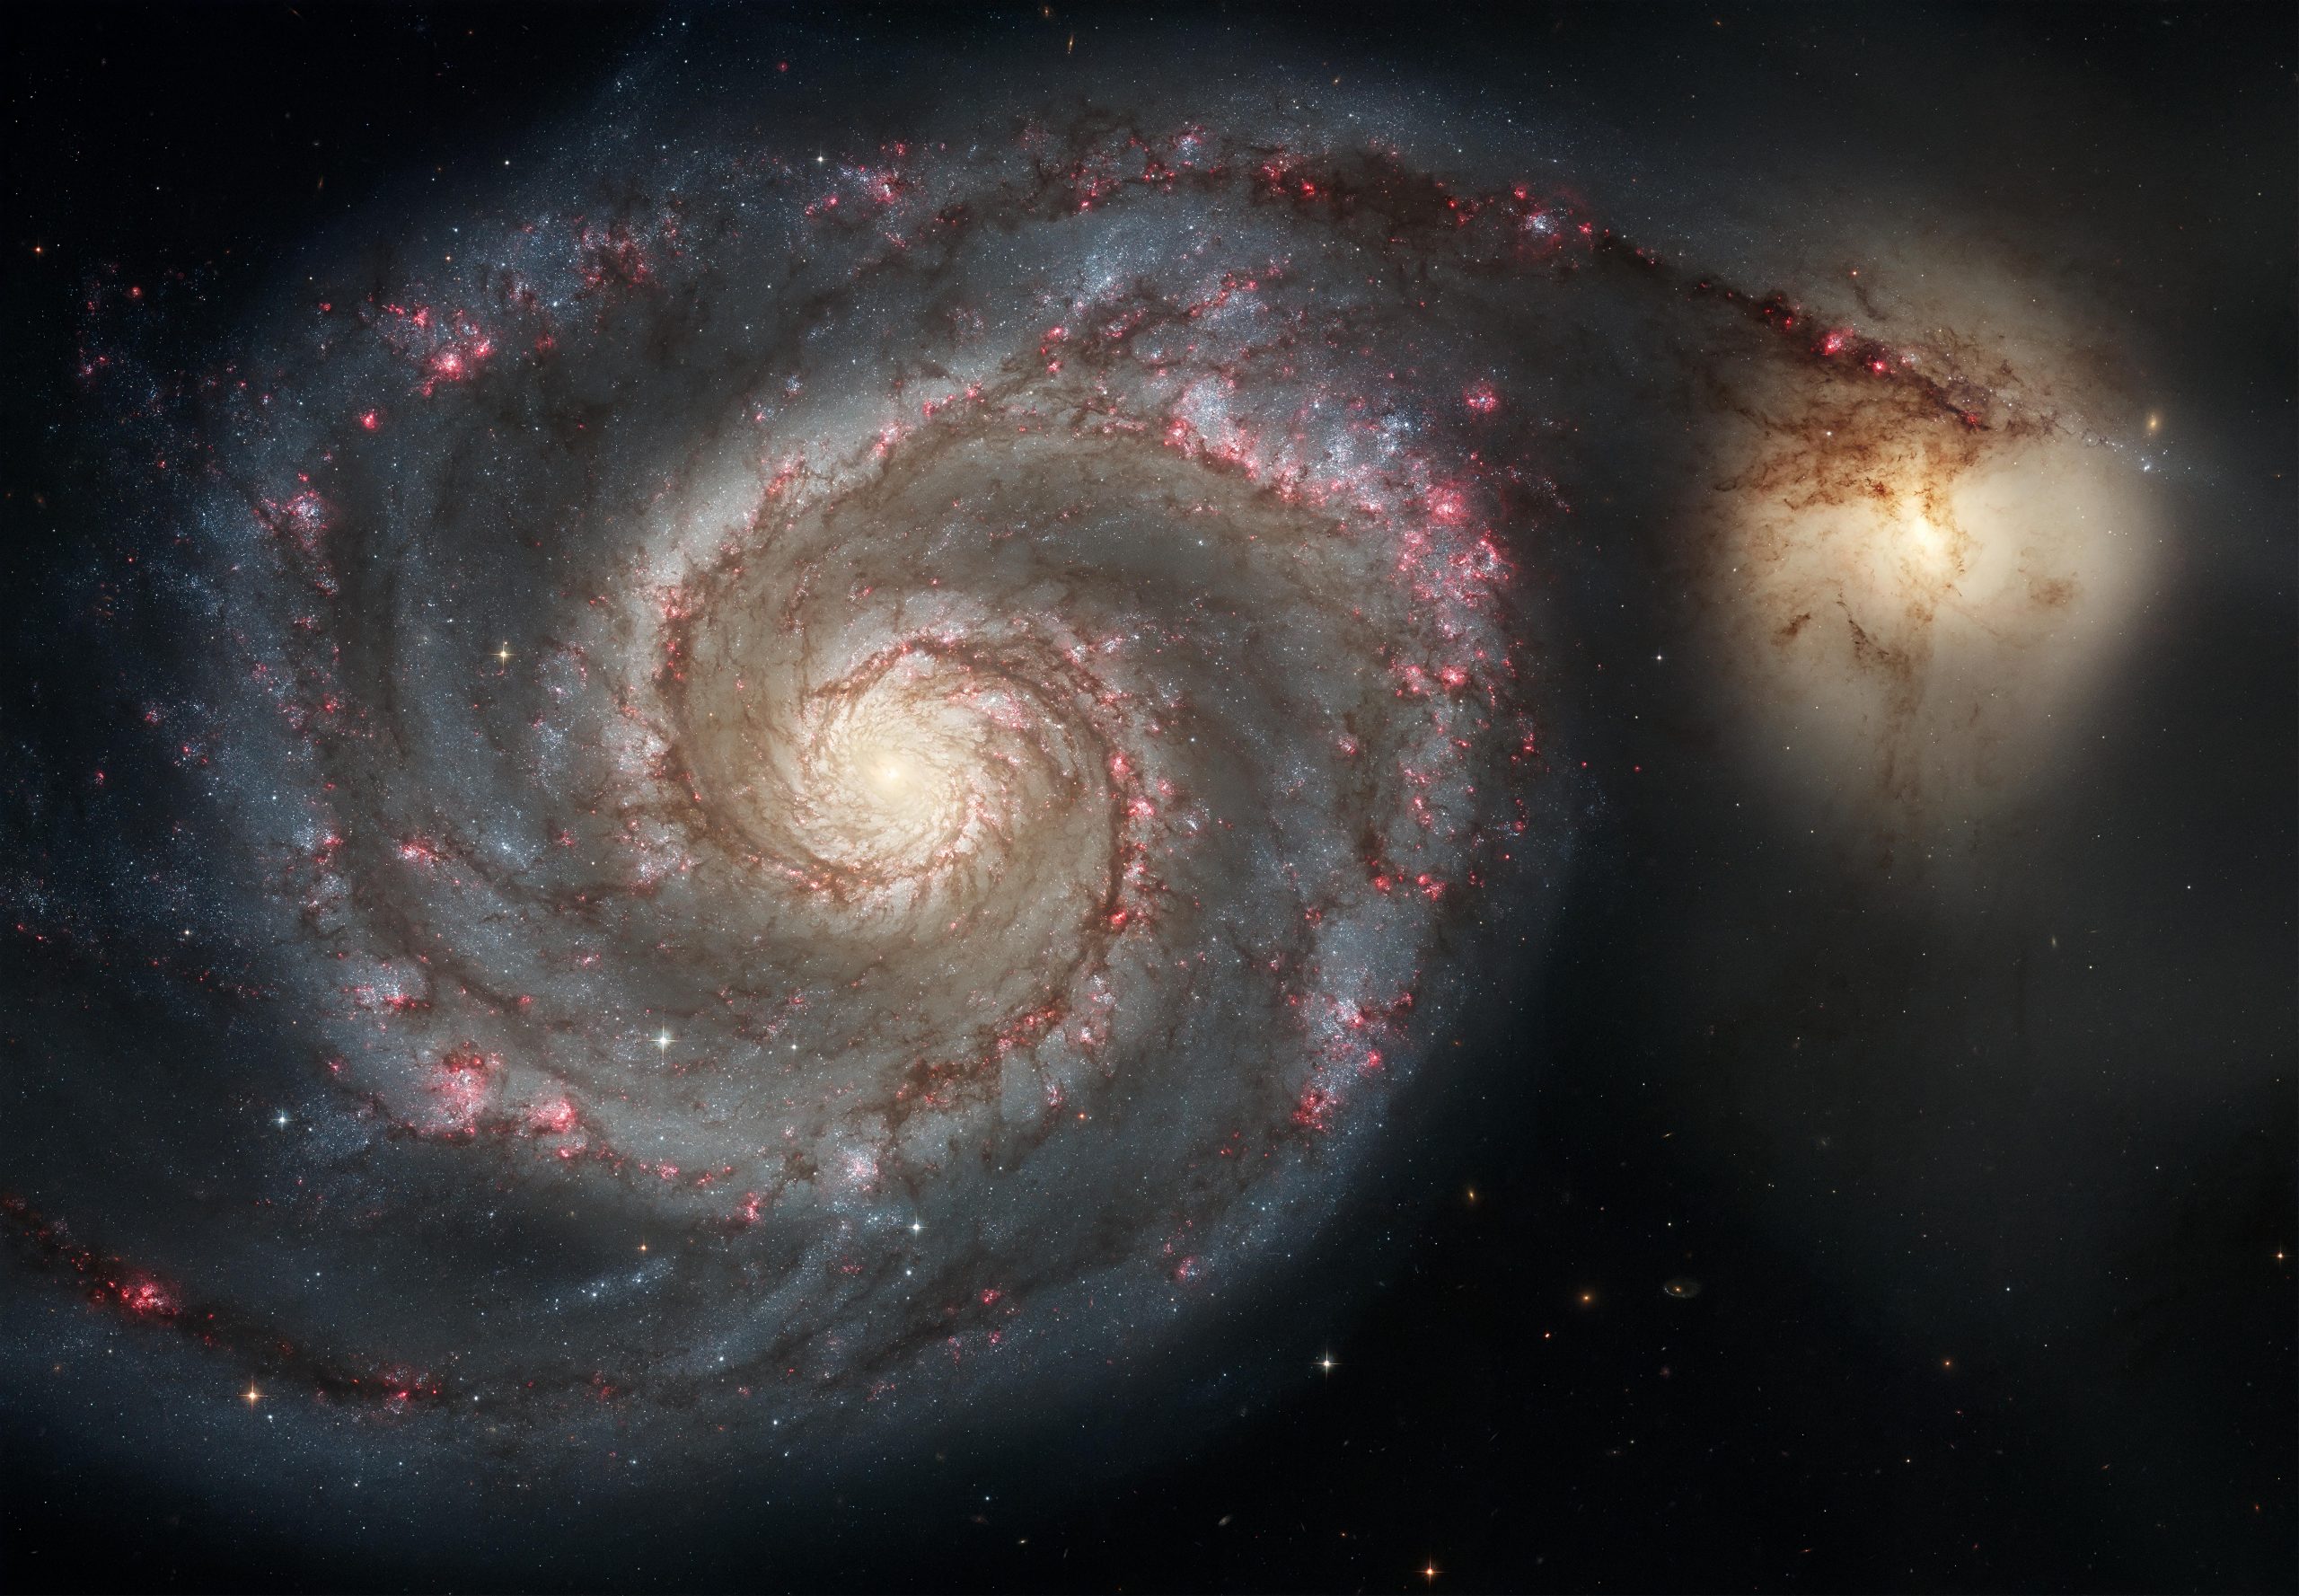 A photograph of a spiral galaxy. Depositphotos.